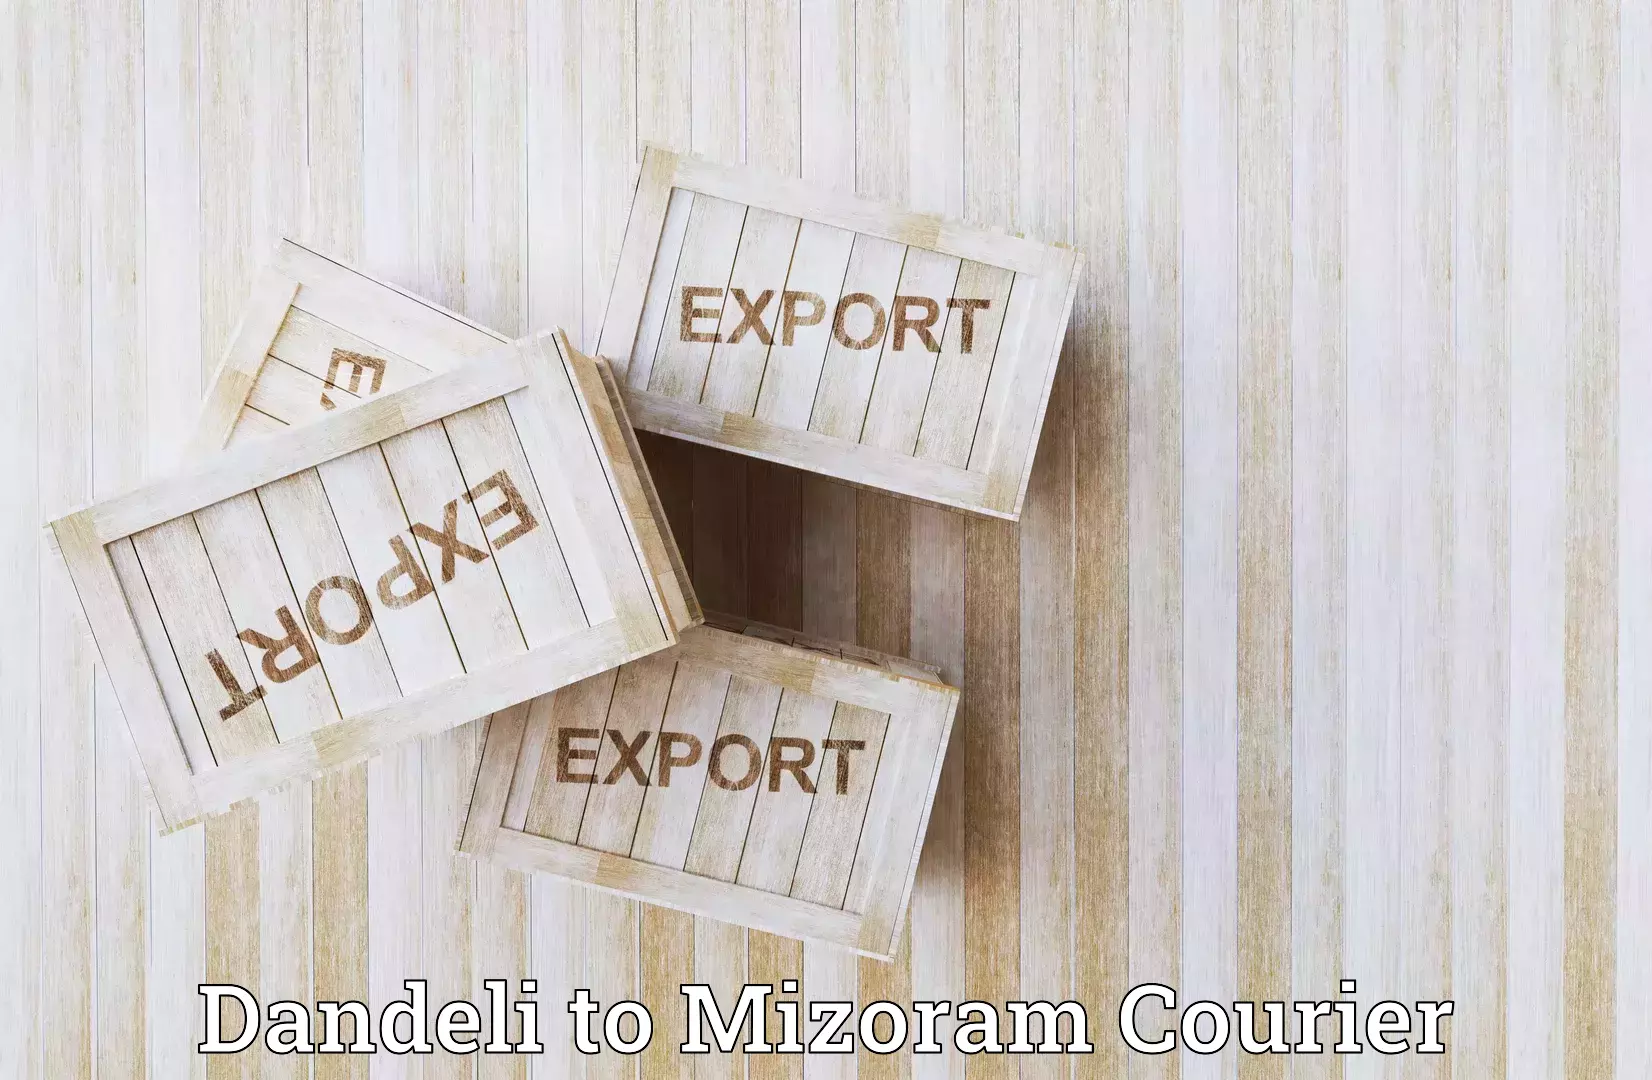 Supply chain delivery Dandeli to Aizawl